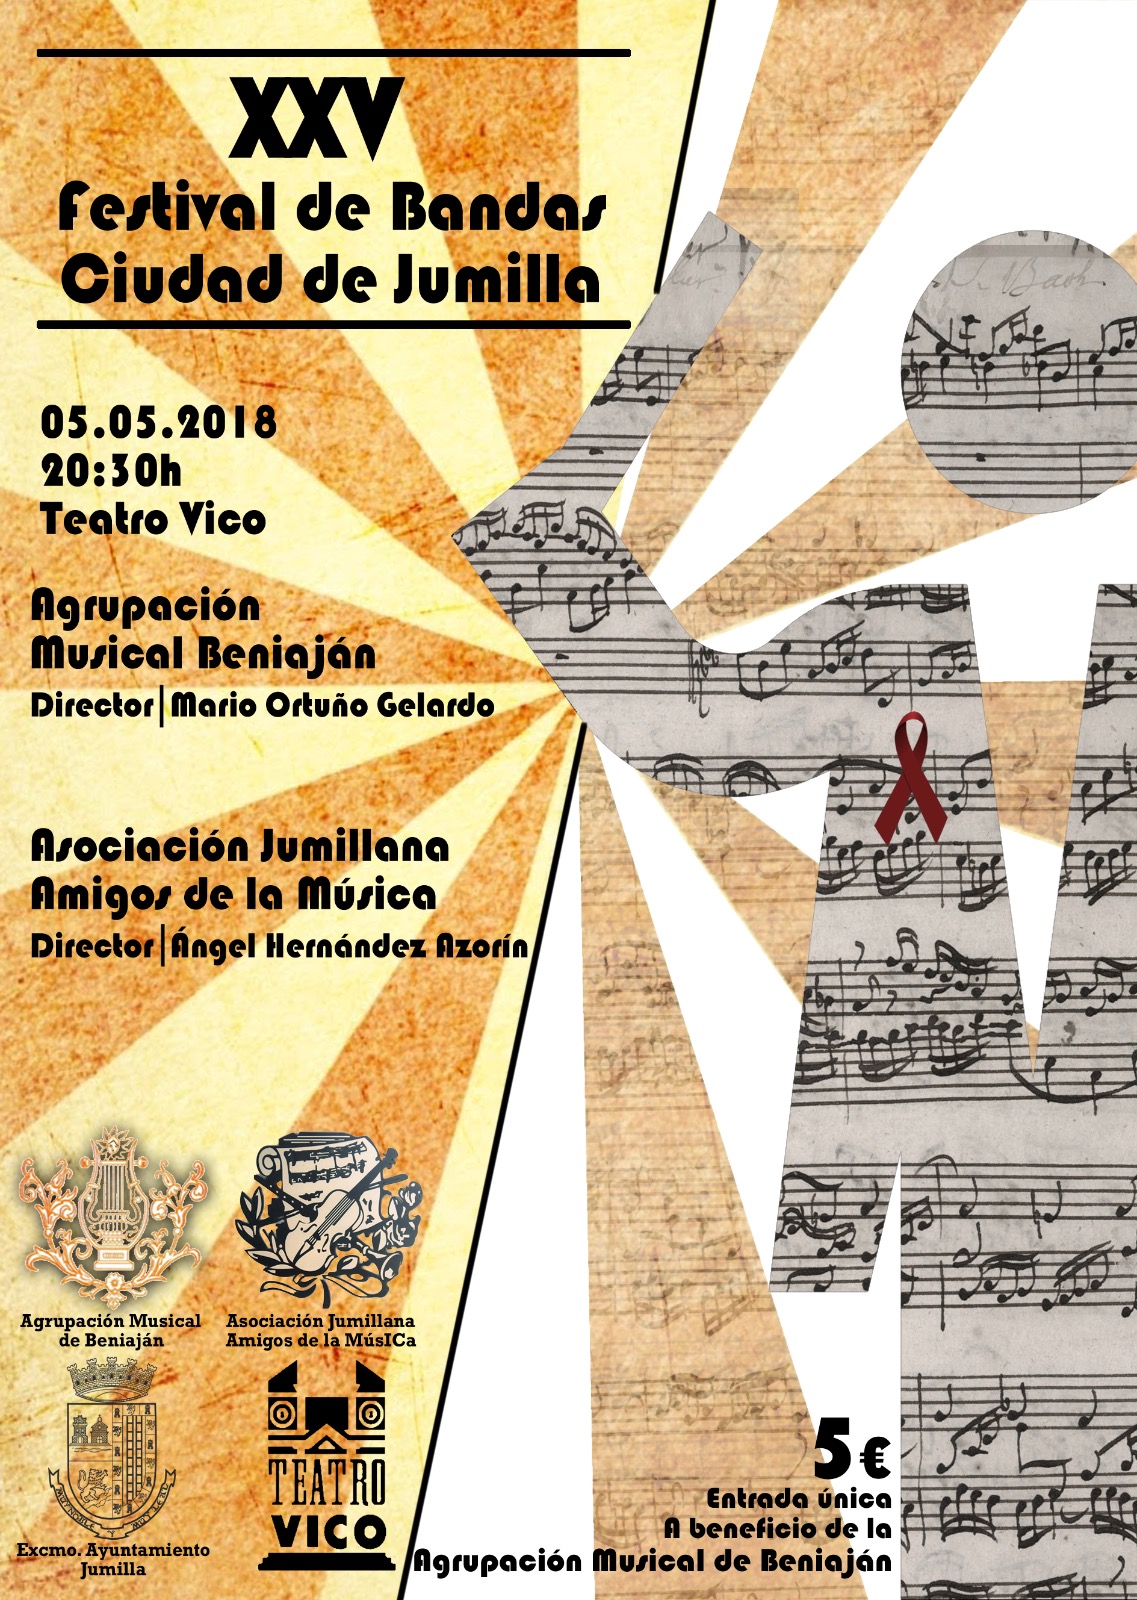 XXV Festival de Bandas Ciudad de Jumilla